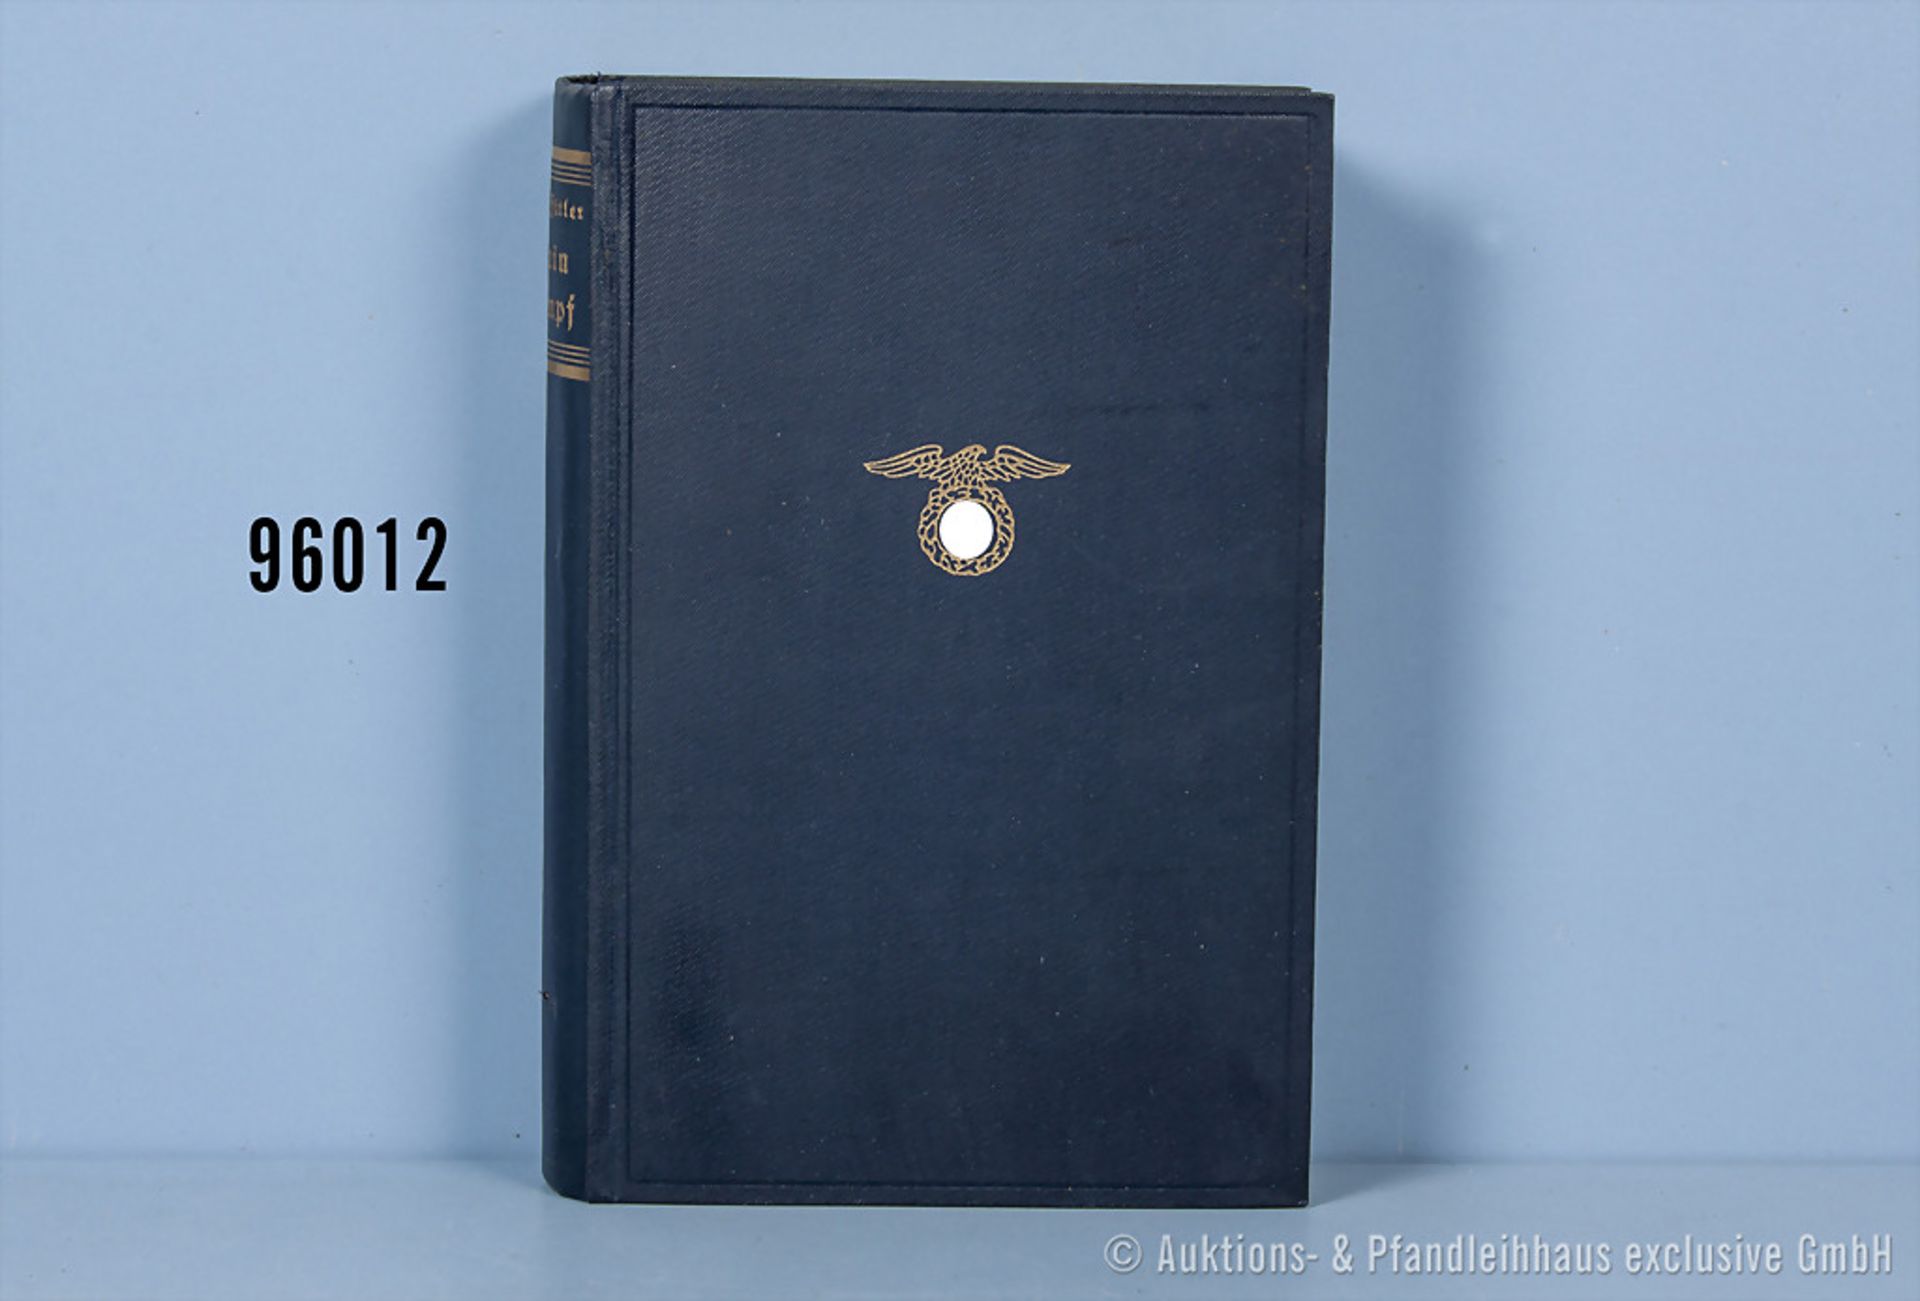 Adolf Hitler "Mein Kampf", blaue Leinenausf. von 1935, guter Zustand, teilweise stockfleckig